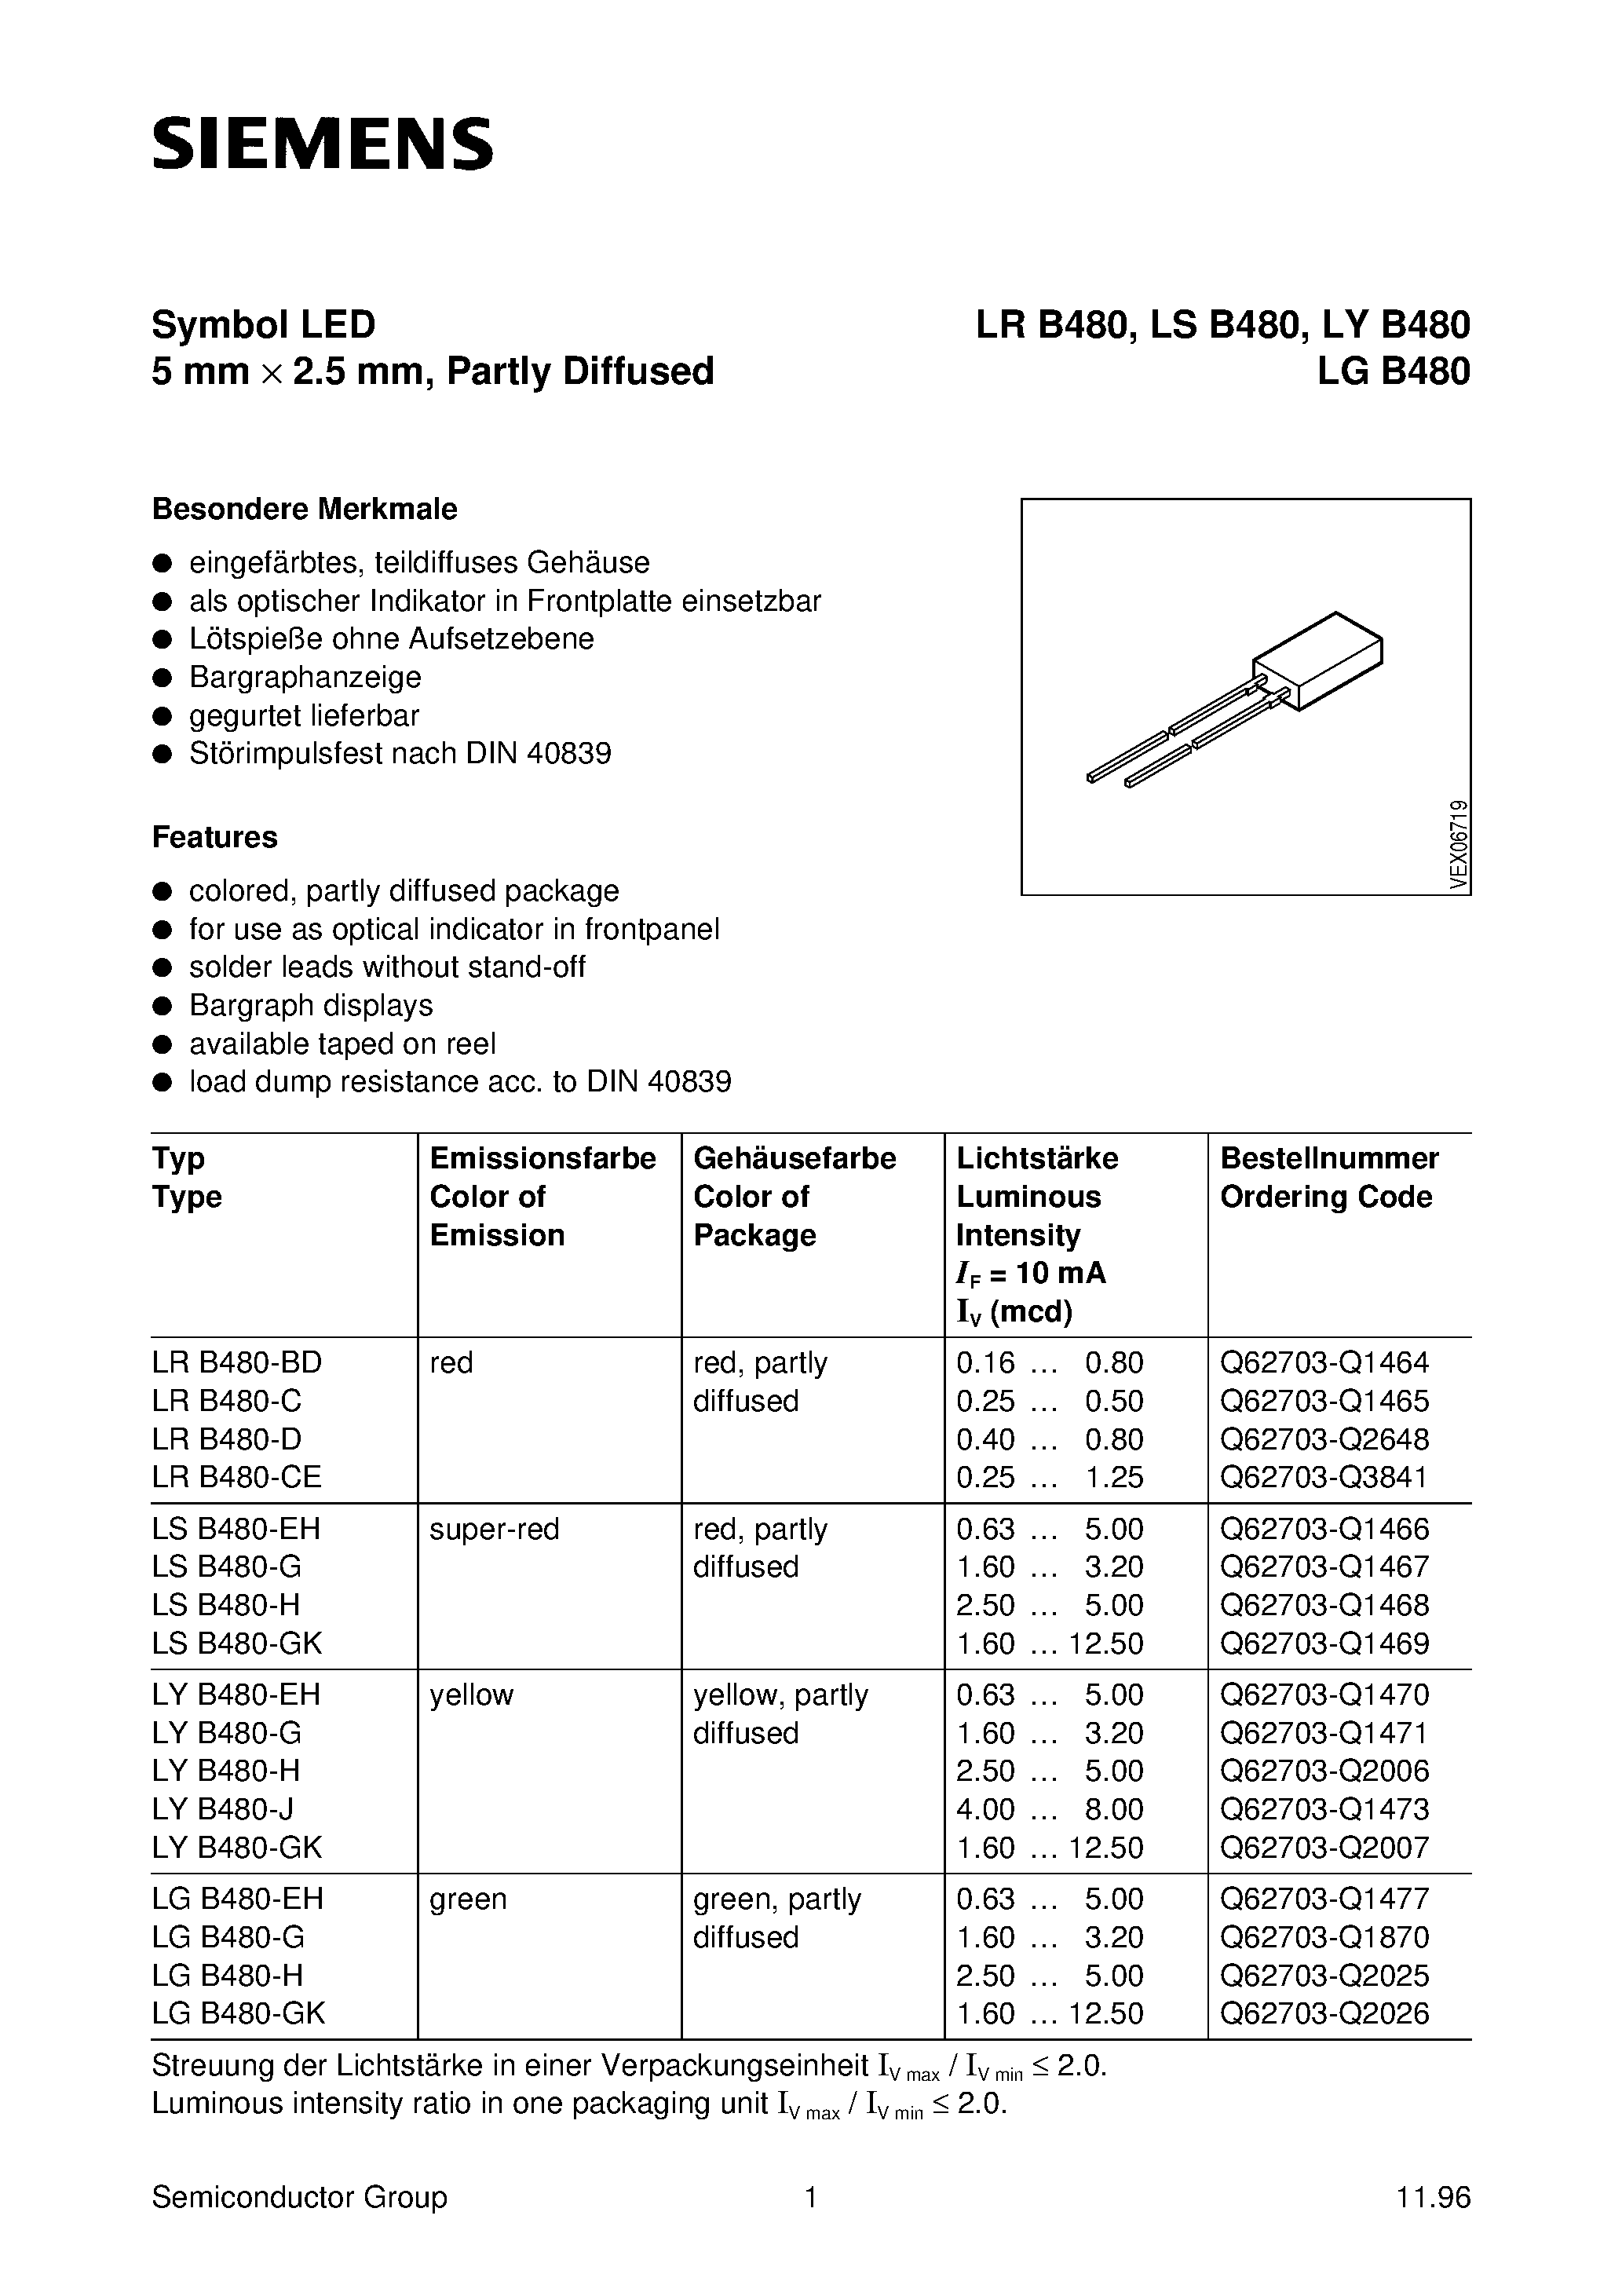 Даташит LYB480-J - Symbol LED 5 mm x 2.5 mm/ Partly Diffused страница 1